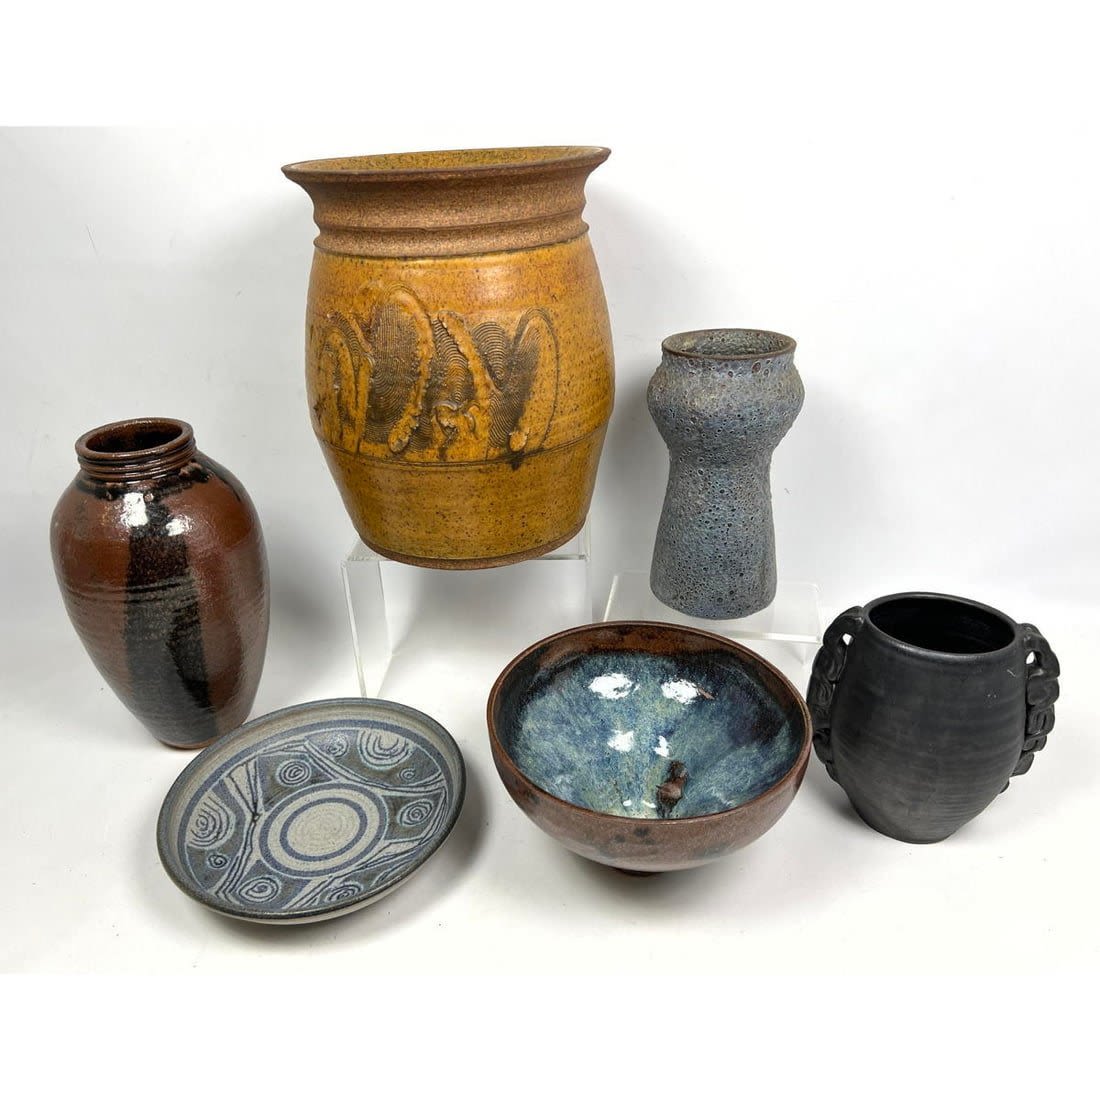 Studio Glazed Ceramic Pottery and